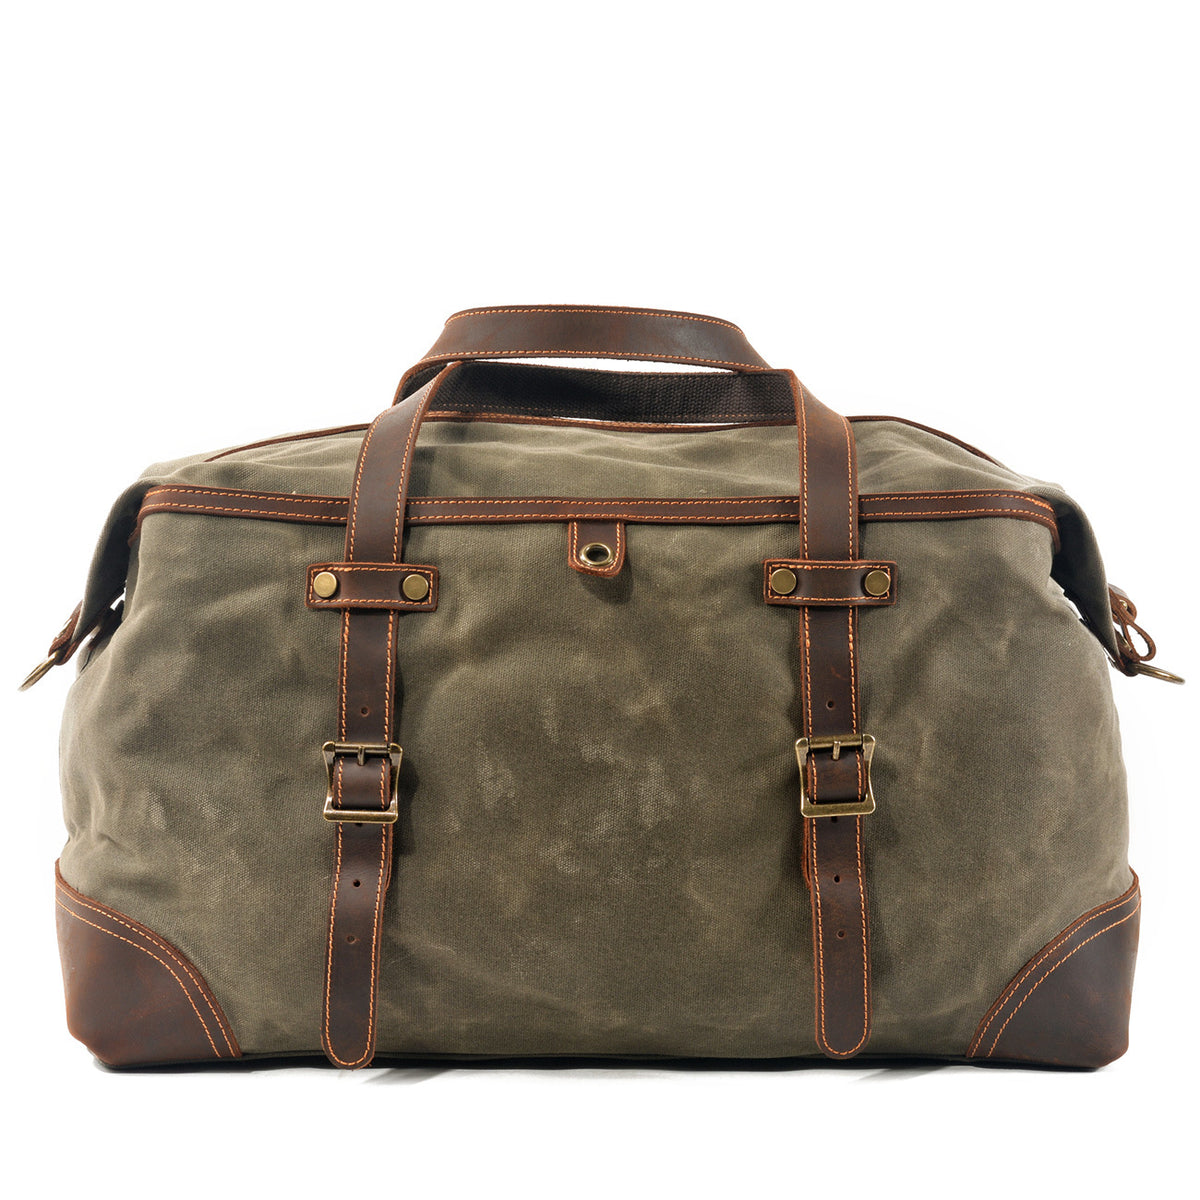 Waterproof Waxed Canvas Duffle Bag Luggage Weekender Bag Travel Bag Du ...